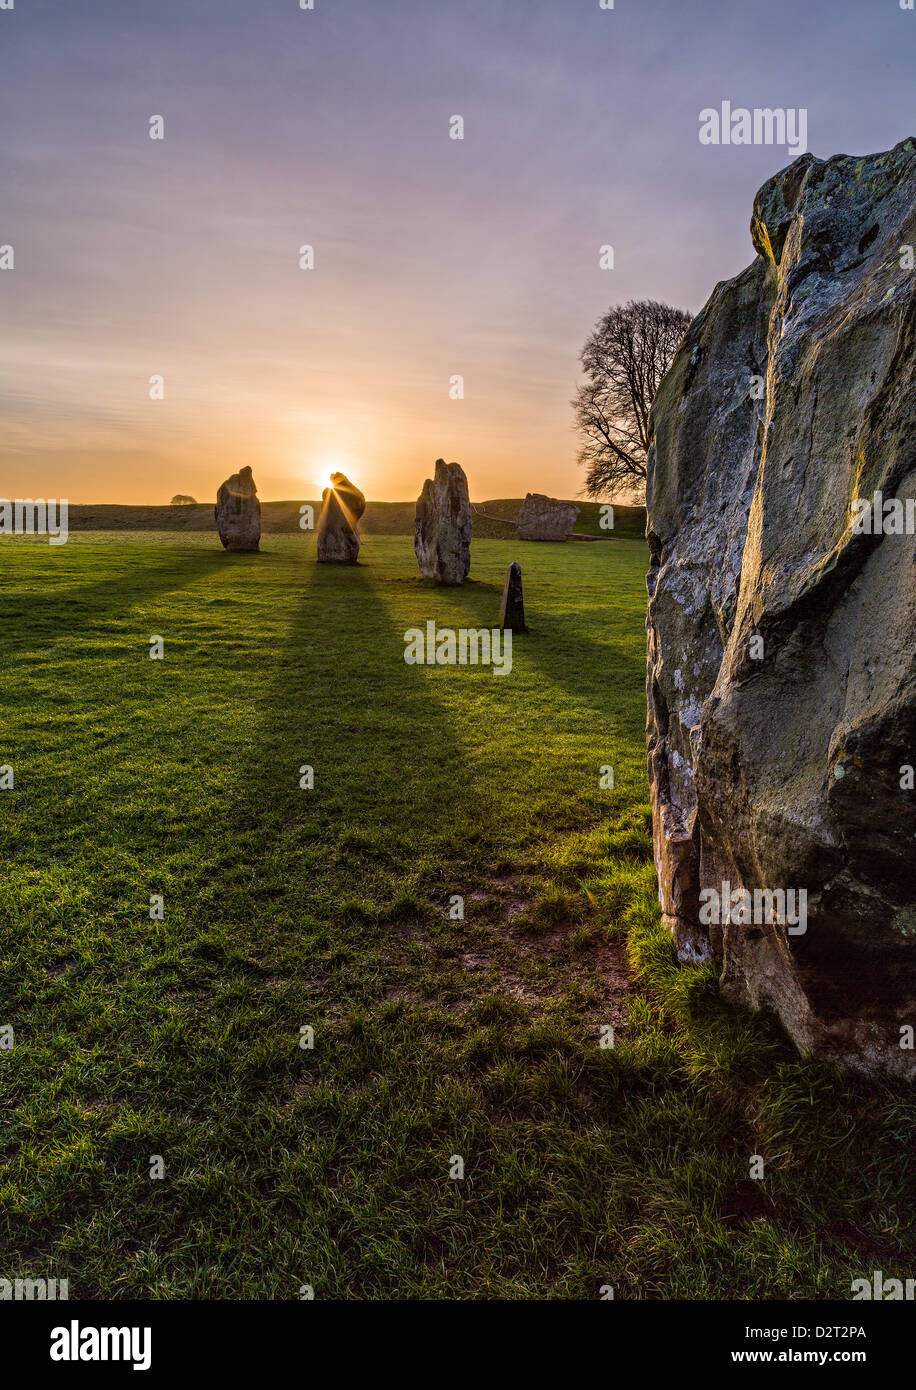 Il sole sorge alle spalle di una parte del grande cerchio di pietre di Avebury, Wiltshire, Regno Unito casting lunghe ombre attraverso il terreno. Foto Stock